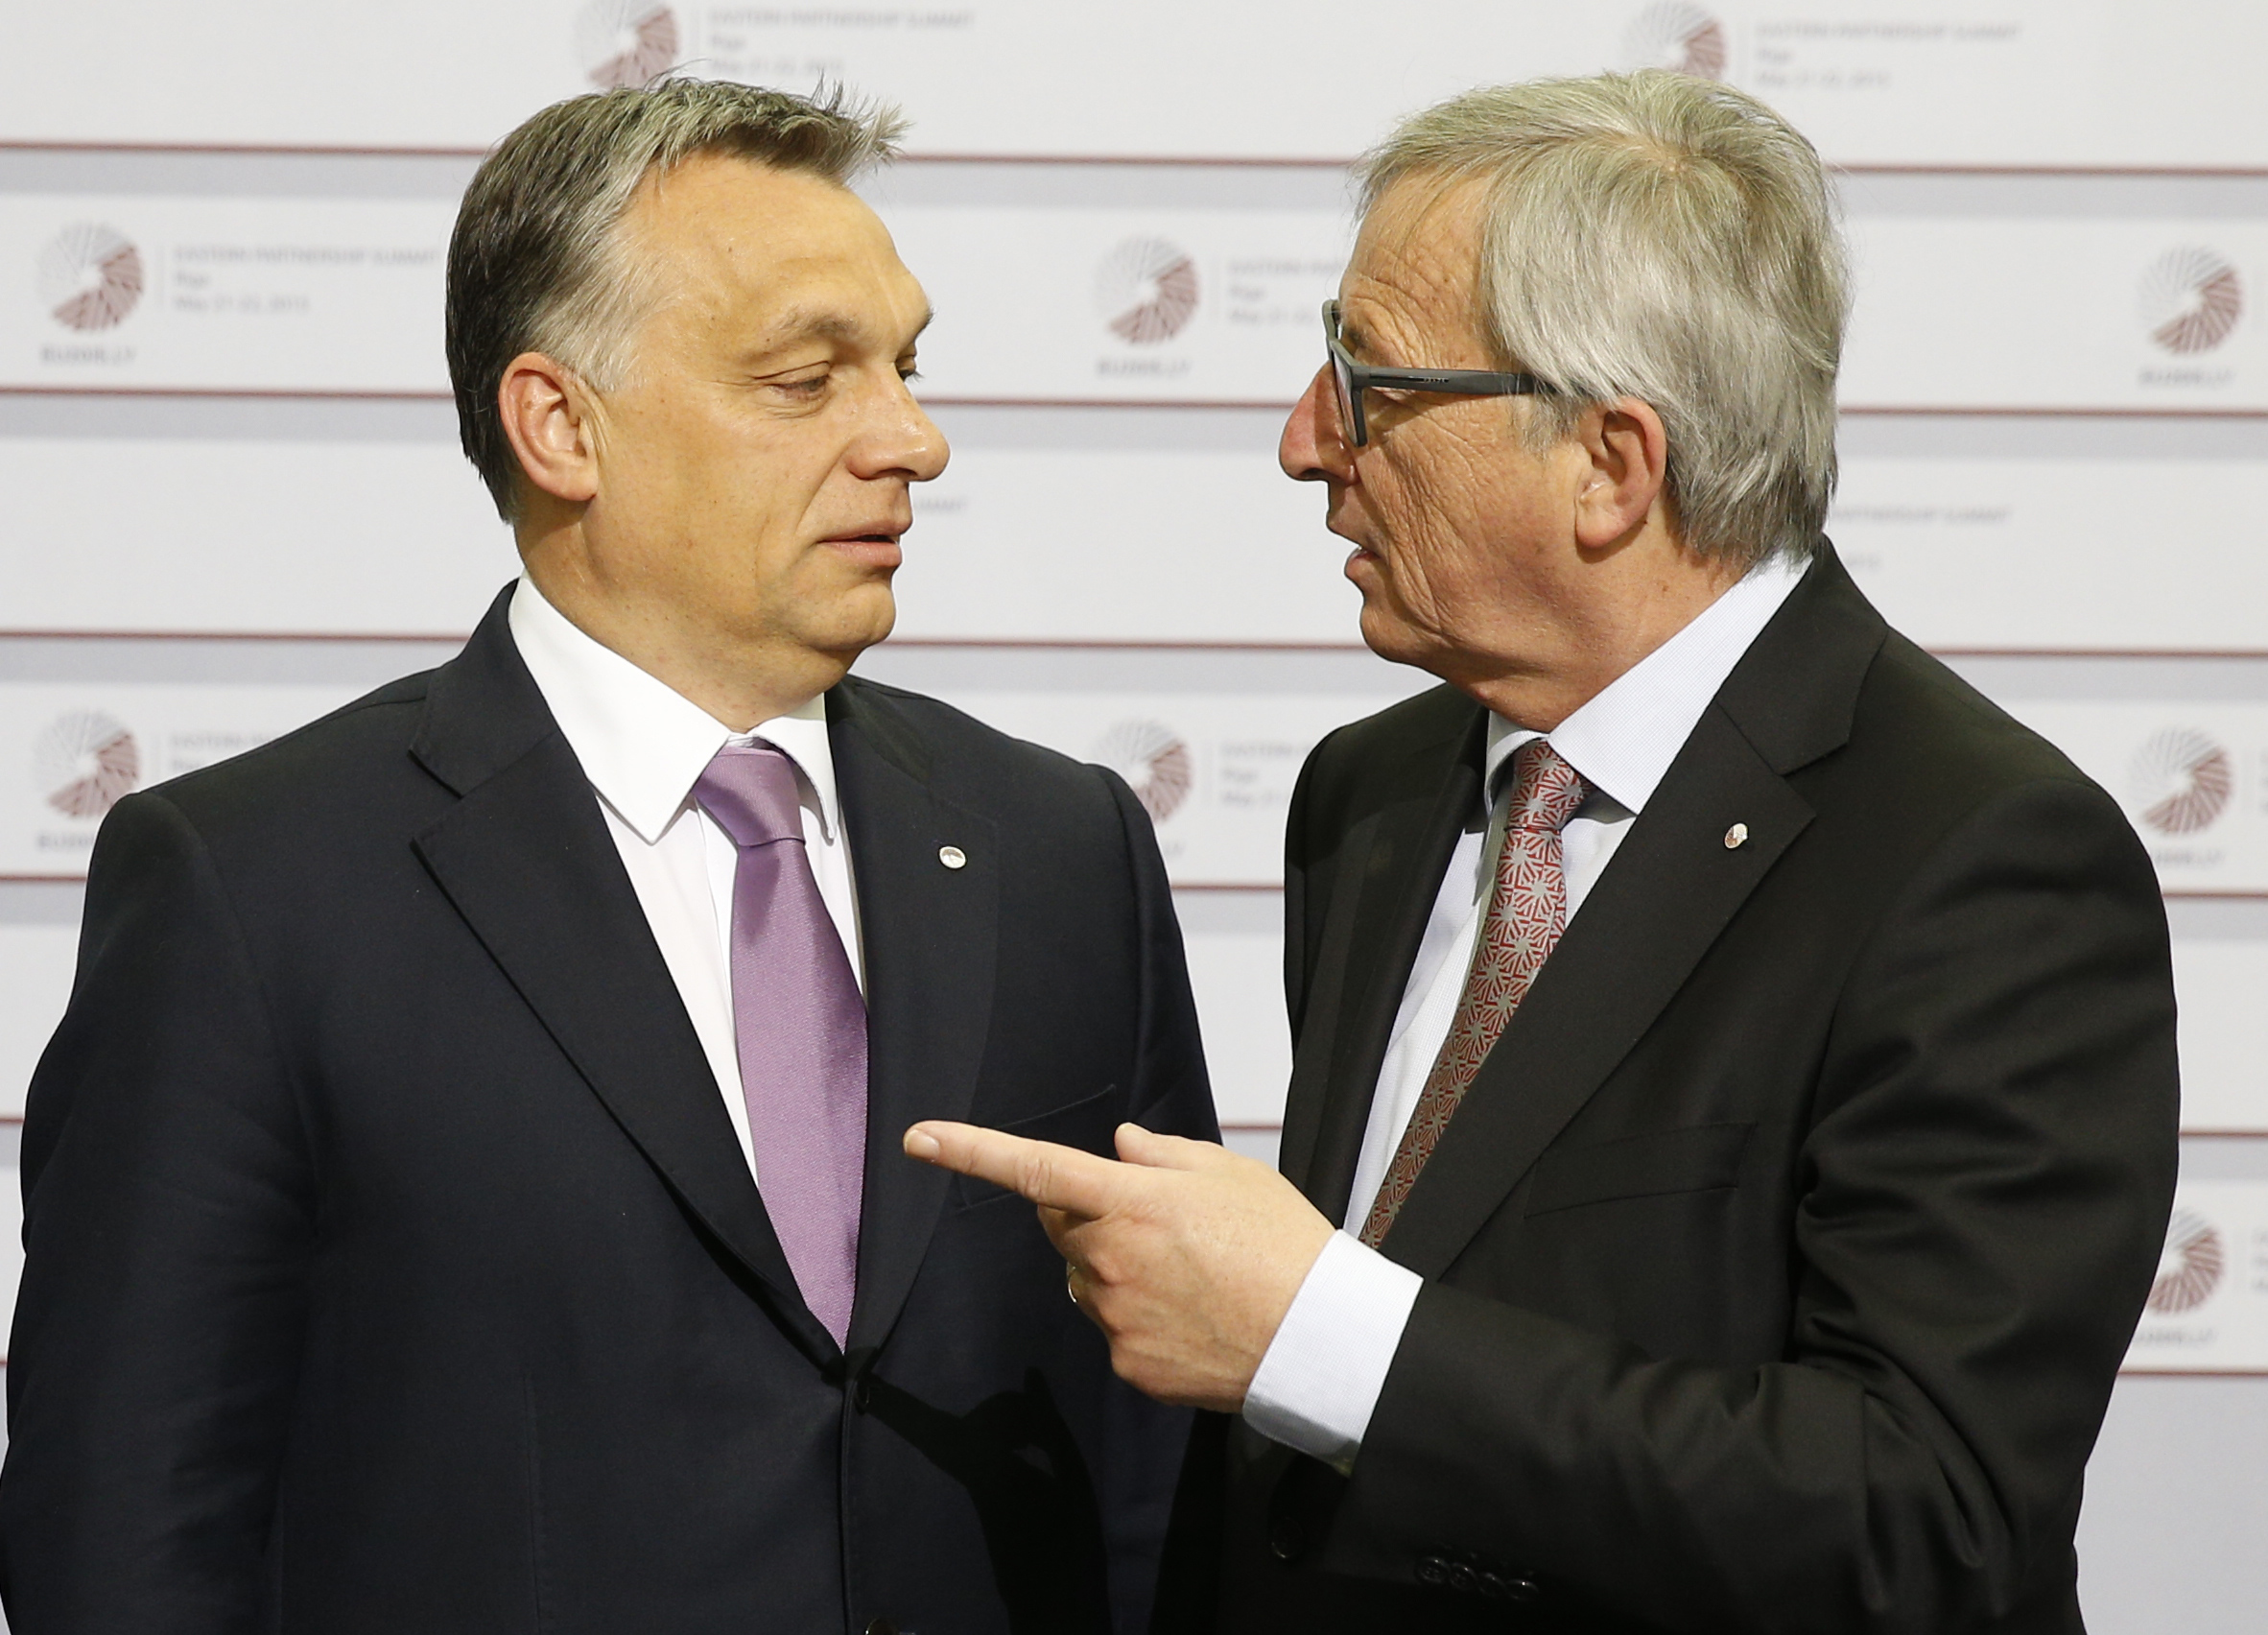 Унгарският премиер Виктор Орбан беше посрещнат от председателя на ЕК Жан-Клод Юнкер с думите ”Привет, диктаторе”